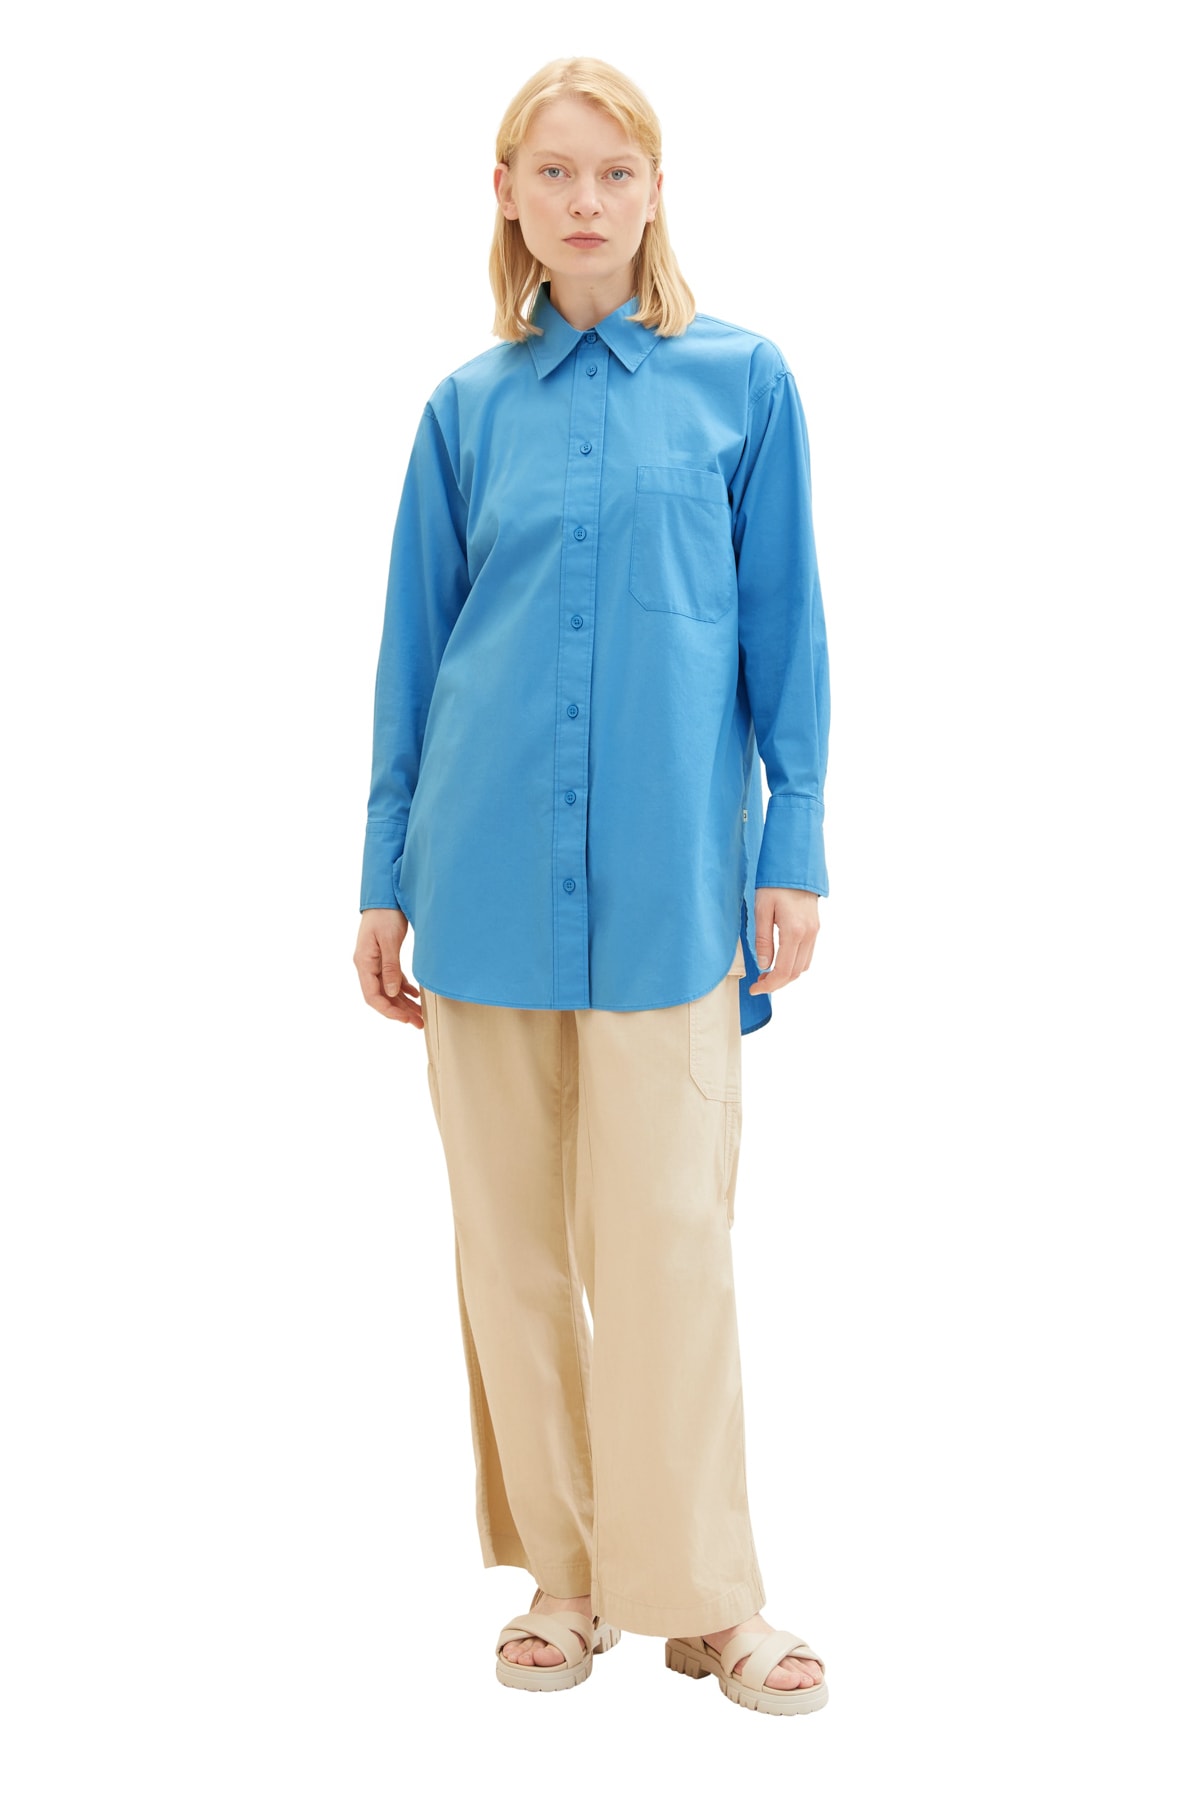 Рубашка Женская/Девочка водный спорт синяя Tom Tailor Denim, синий толстовка tom tailor средней длины капюшон карманы размер 152 синий